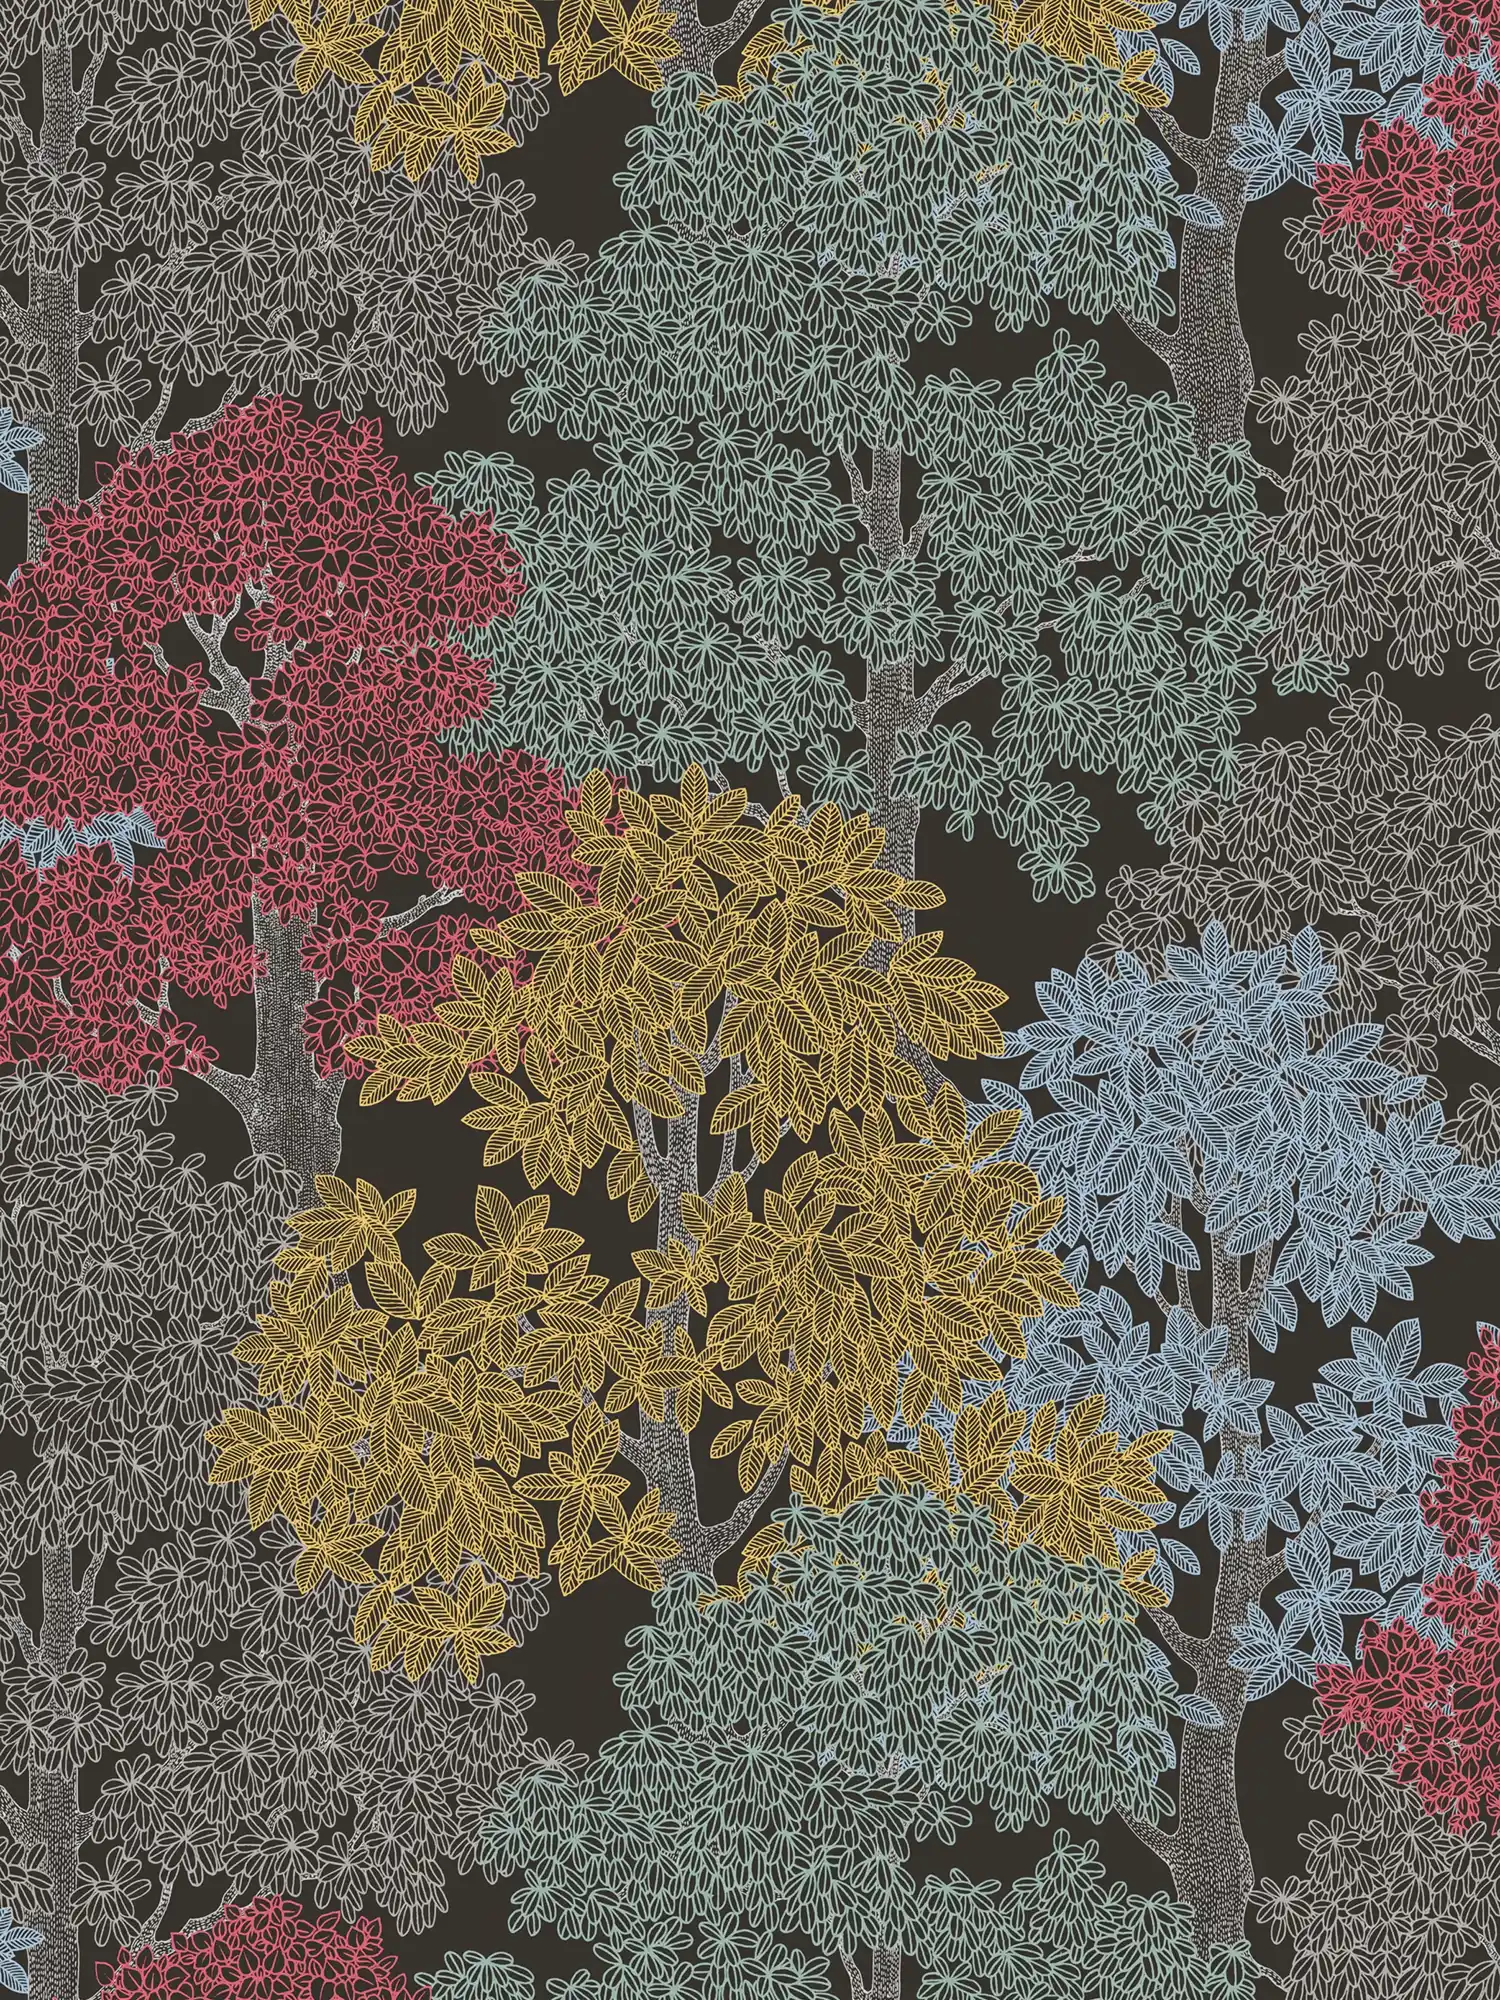             Tapete Wald Design im Zeichenstil mit Baumkronen – Braun, Schwarz, Gelb
        